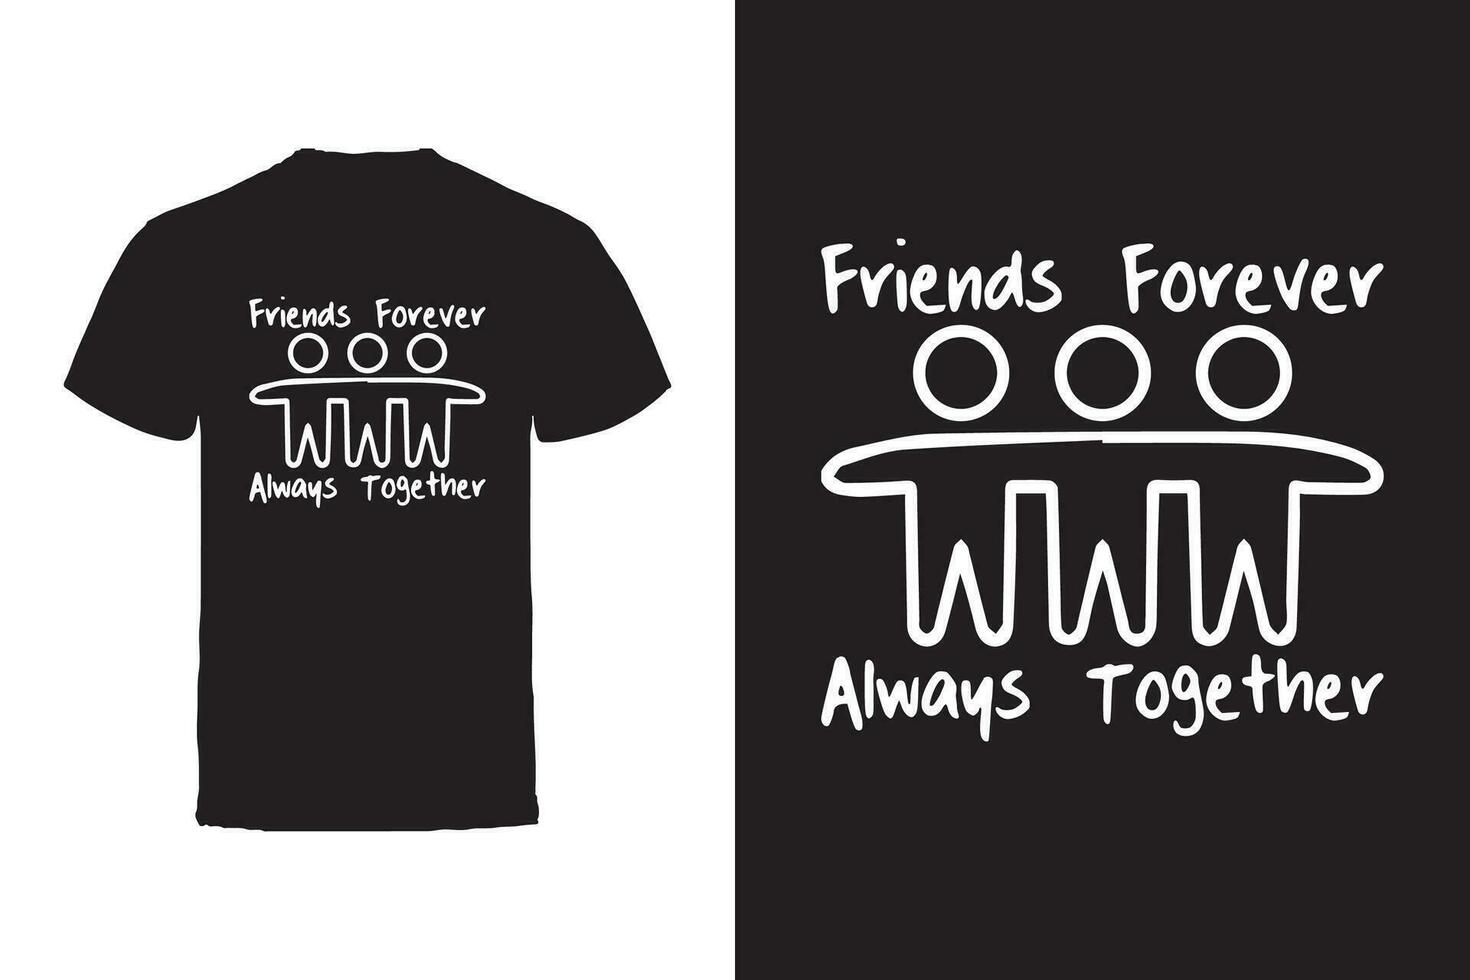 vettore maglietta design. amici e amicizia tipografia vettore maglietta design.